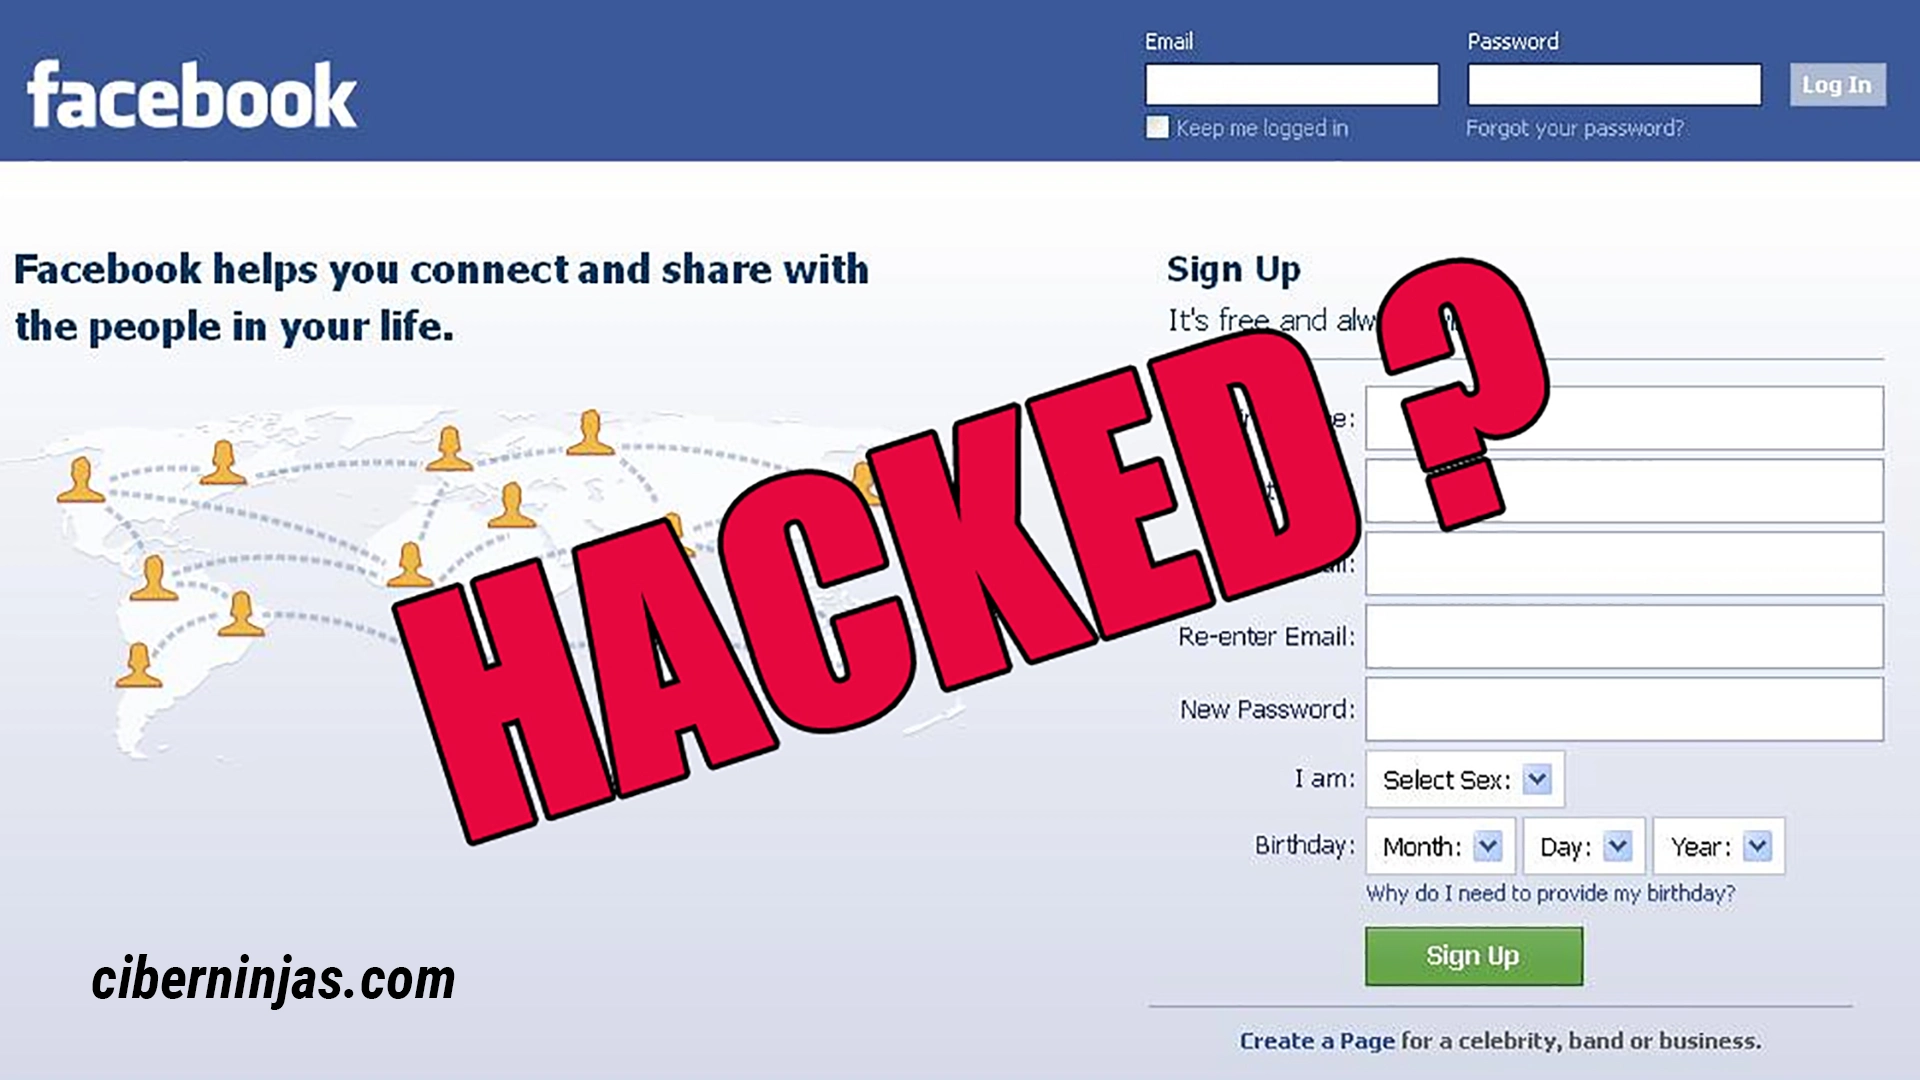 ¿Cómo saber si mi Facebook fue hackeado?